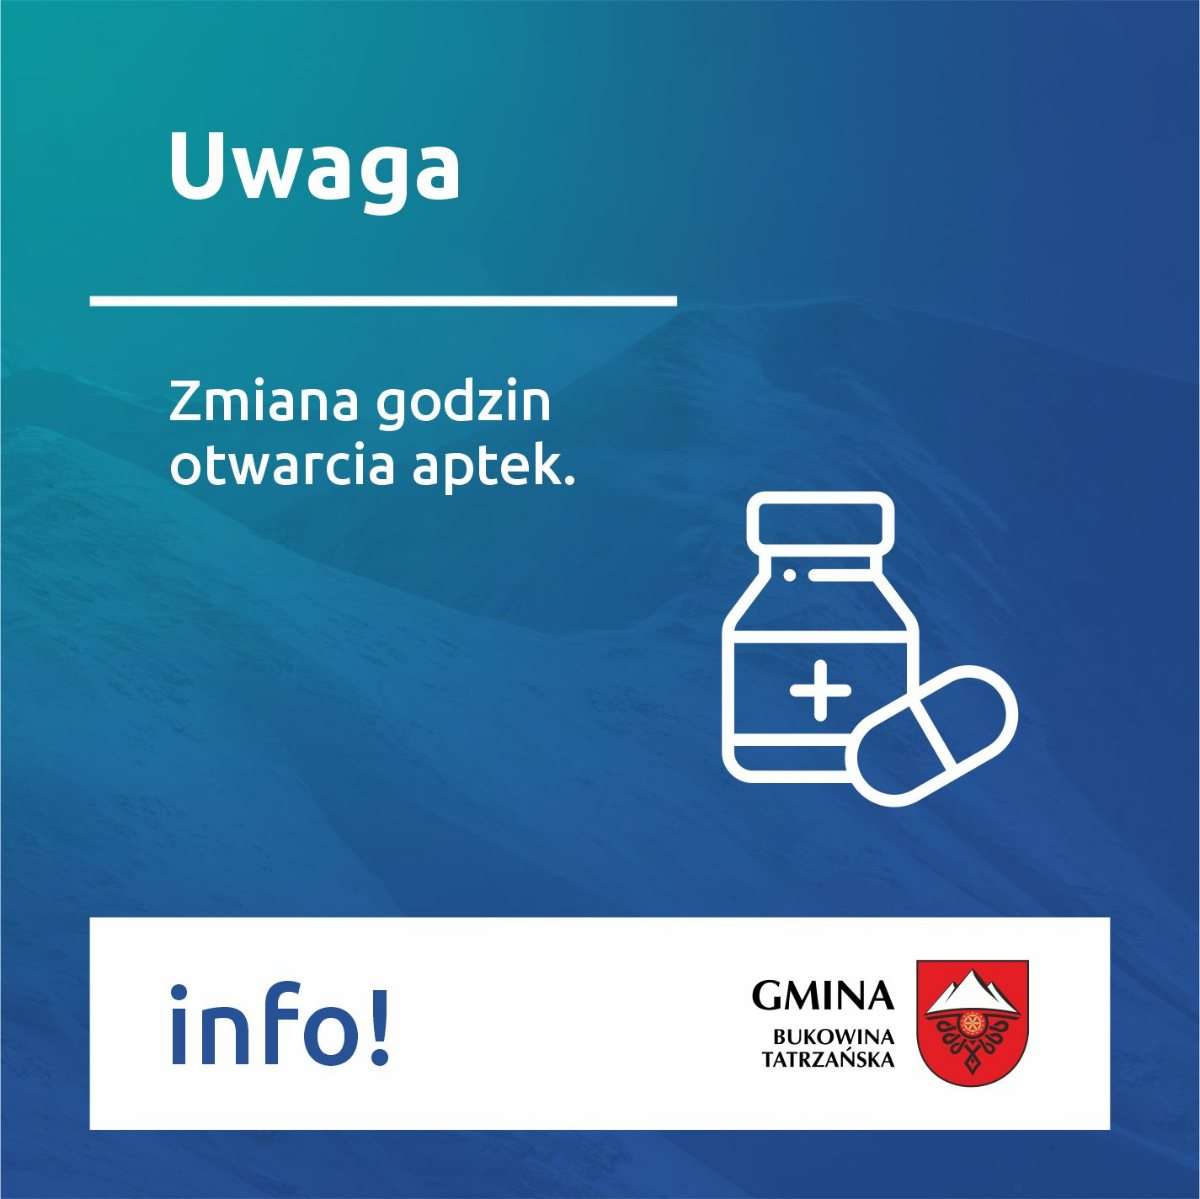 UWAGA: zmiana godzin otwarcia aptek